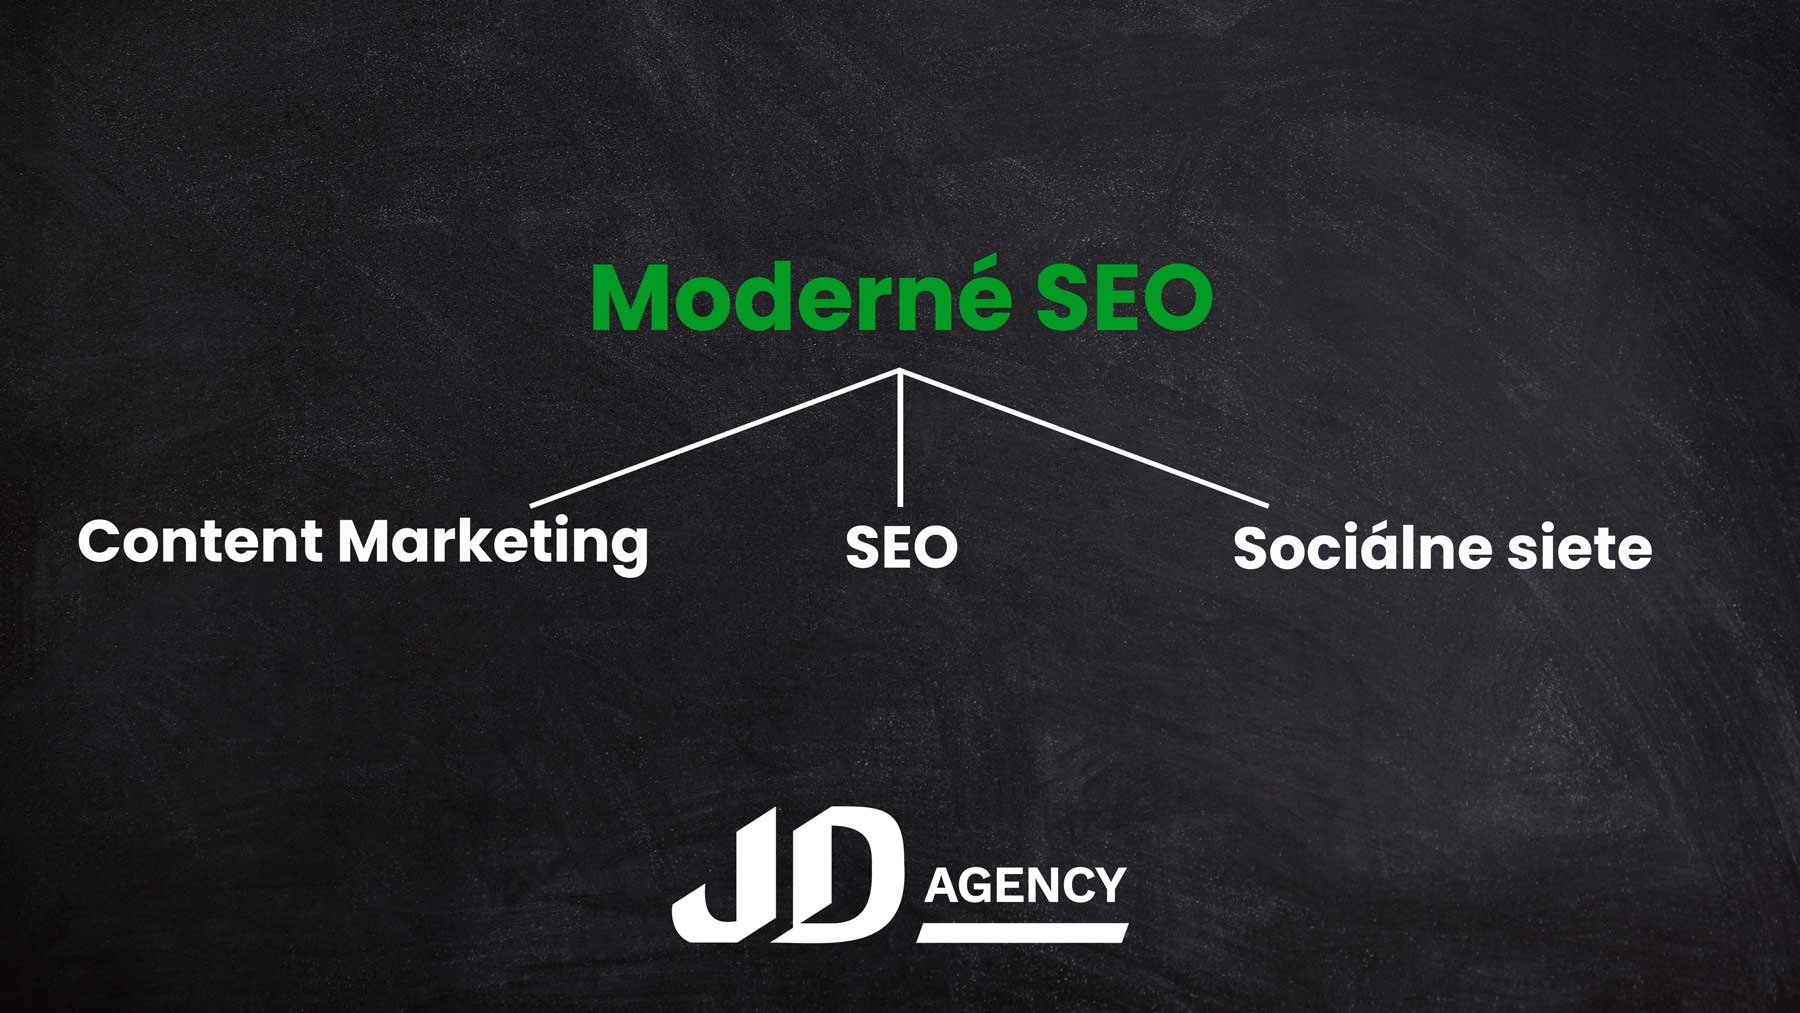 Moderné SEO JD Agency